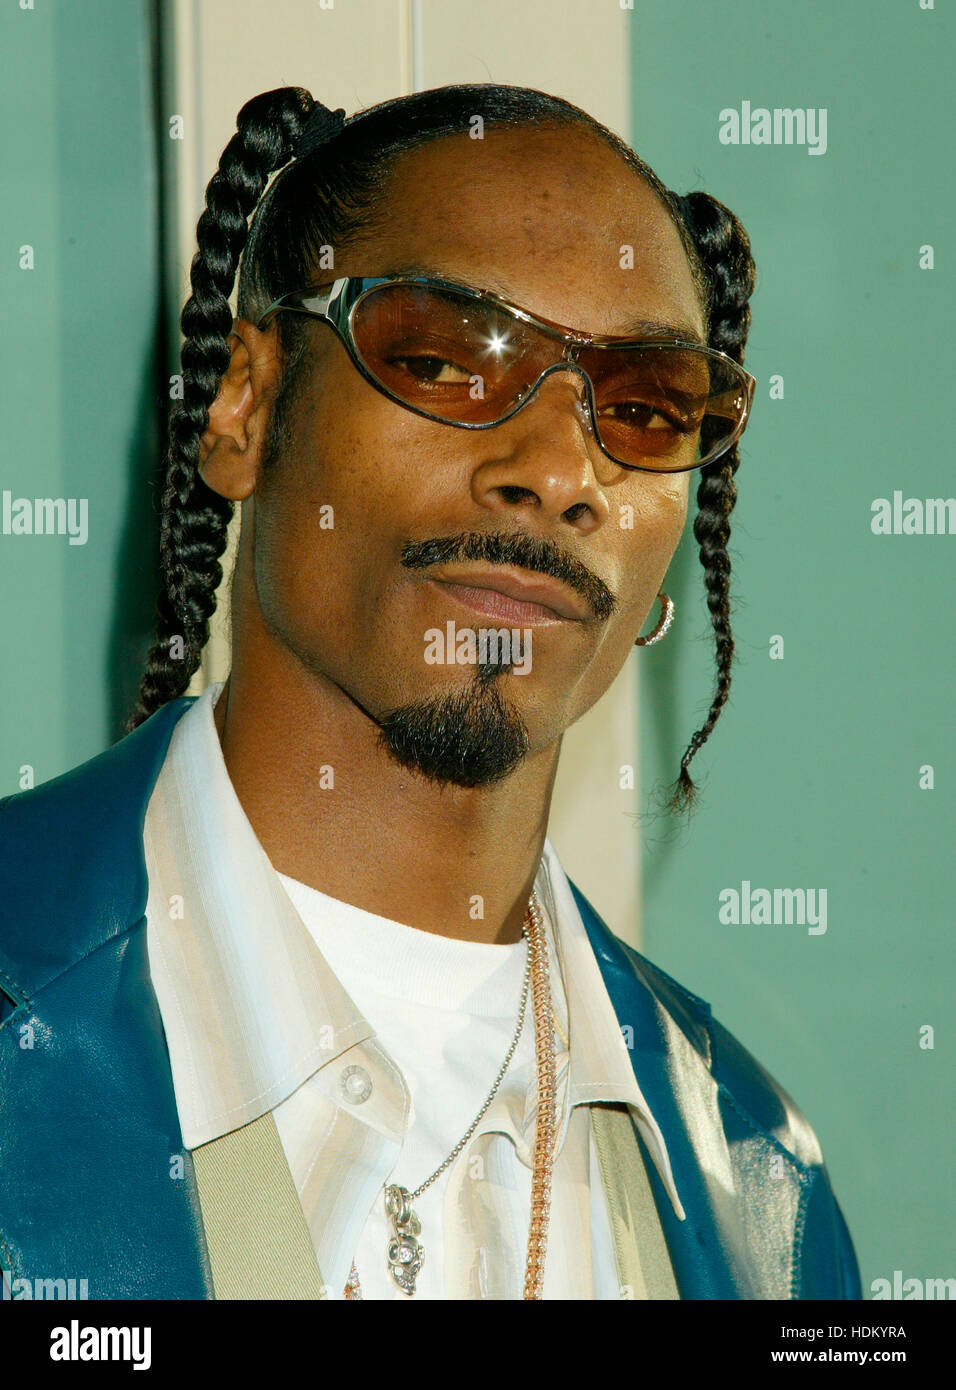 Snoop Dogg bei der Premiere für den Film "Catwoman" in Los Angeles am 19.  Juli 2004. Bildnachweis: Francis Specker Stockfotografie - Alamy